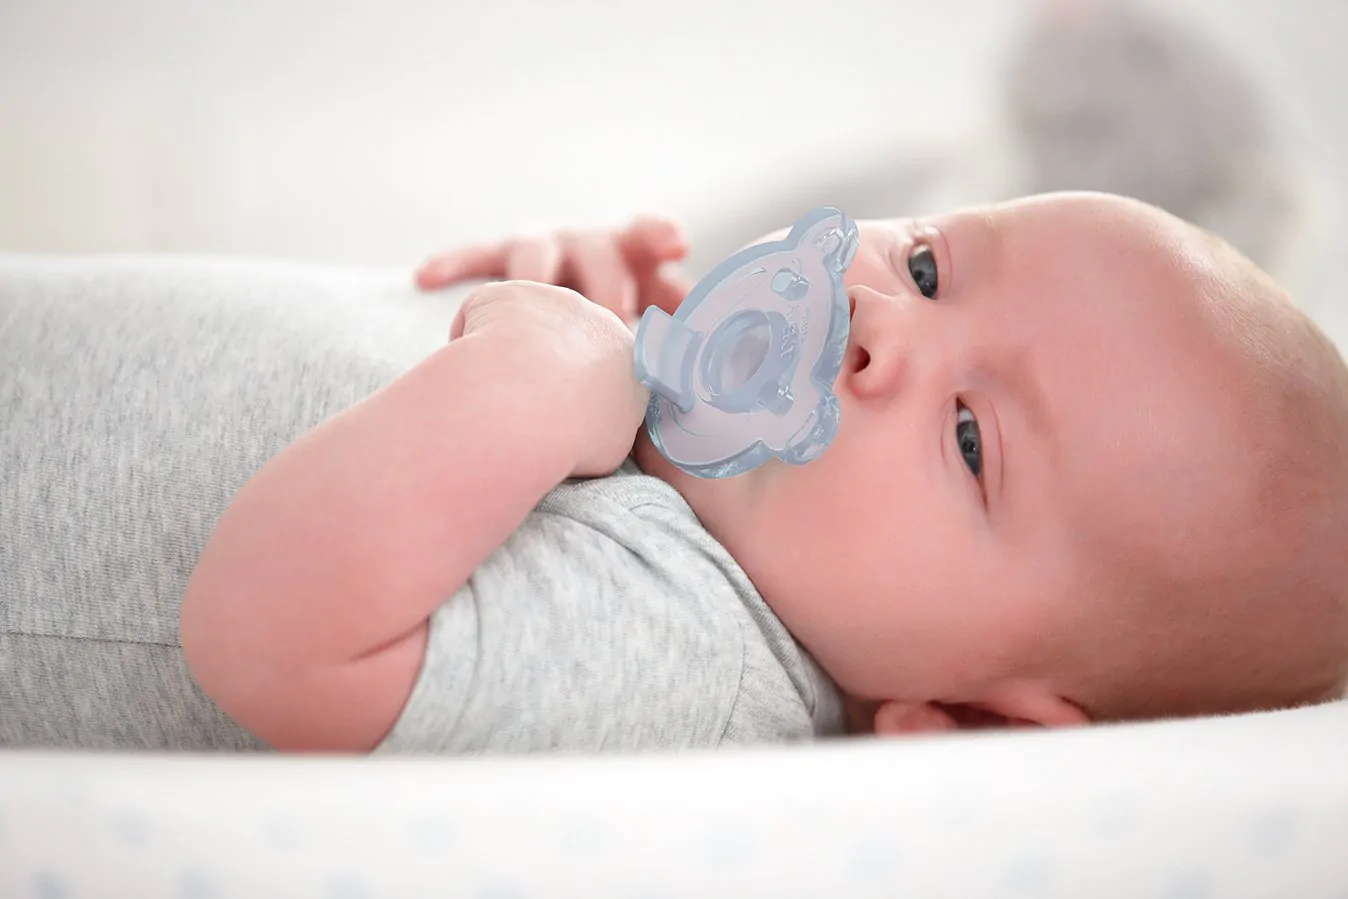 Ciuccio per neonati: quale scegliere